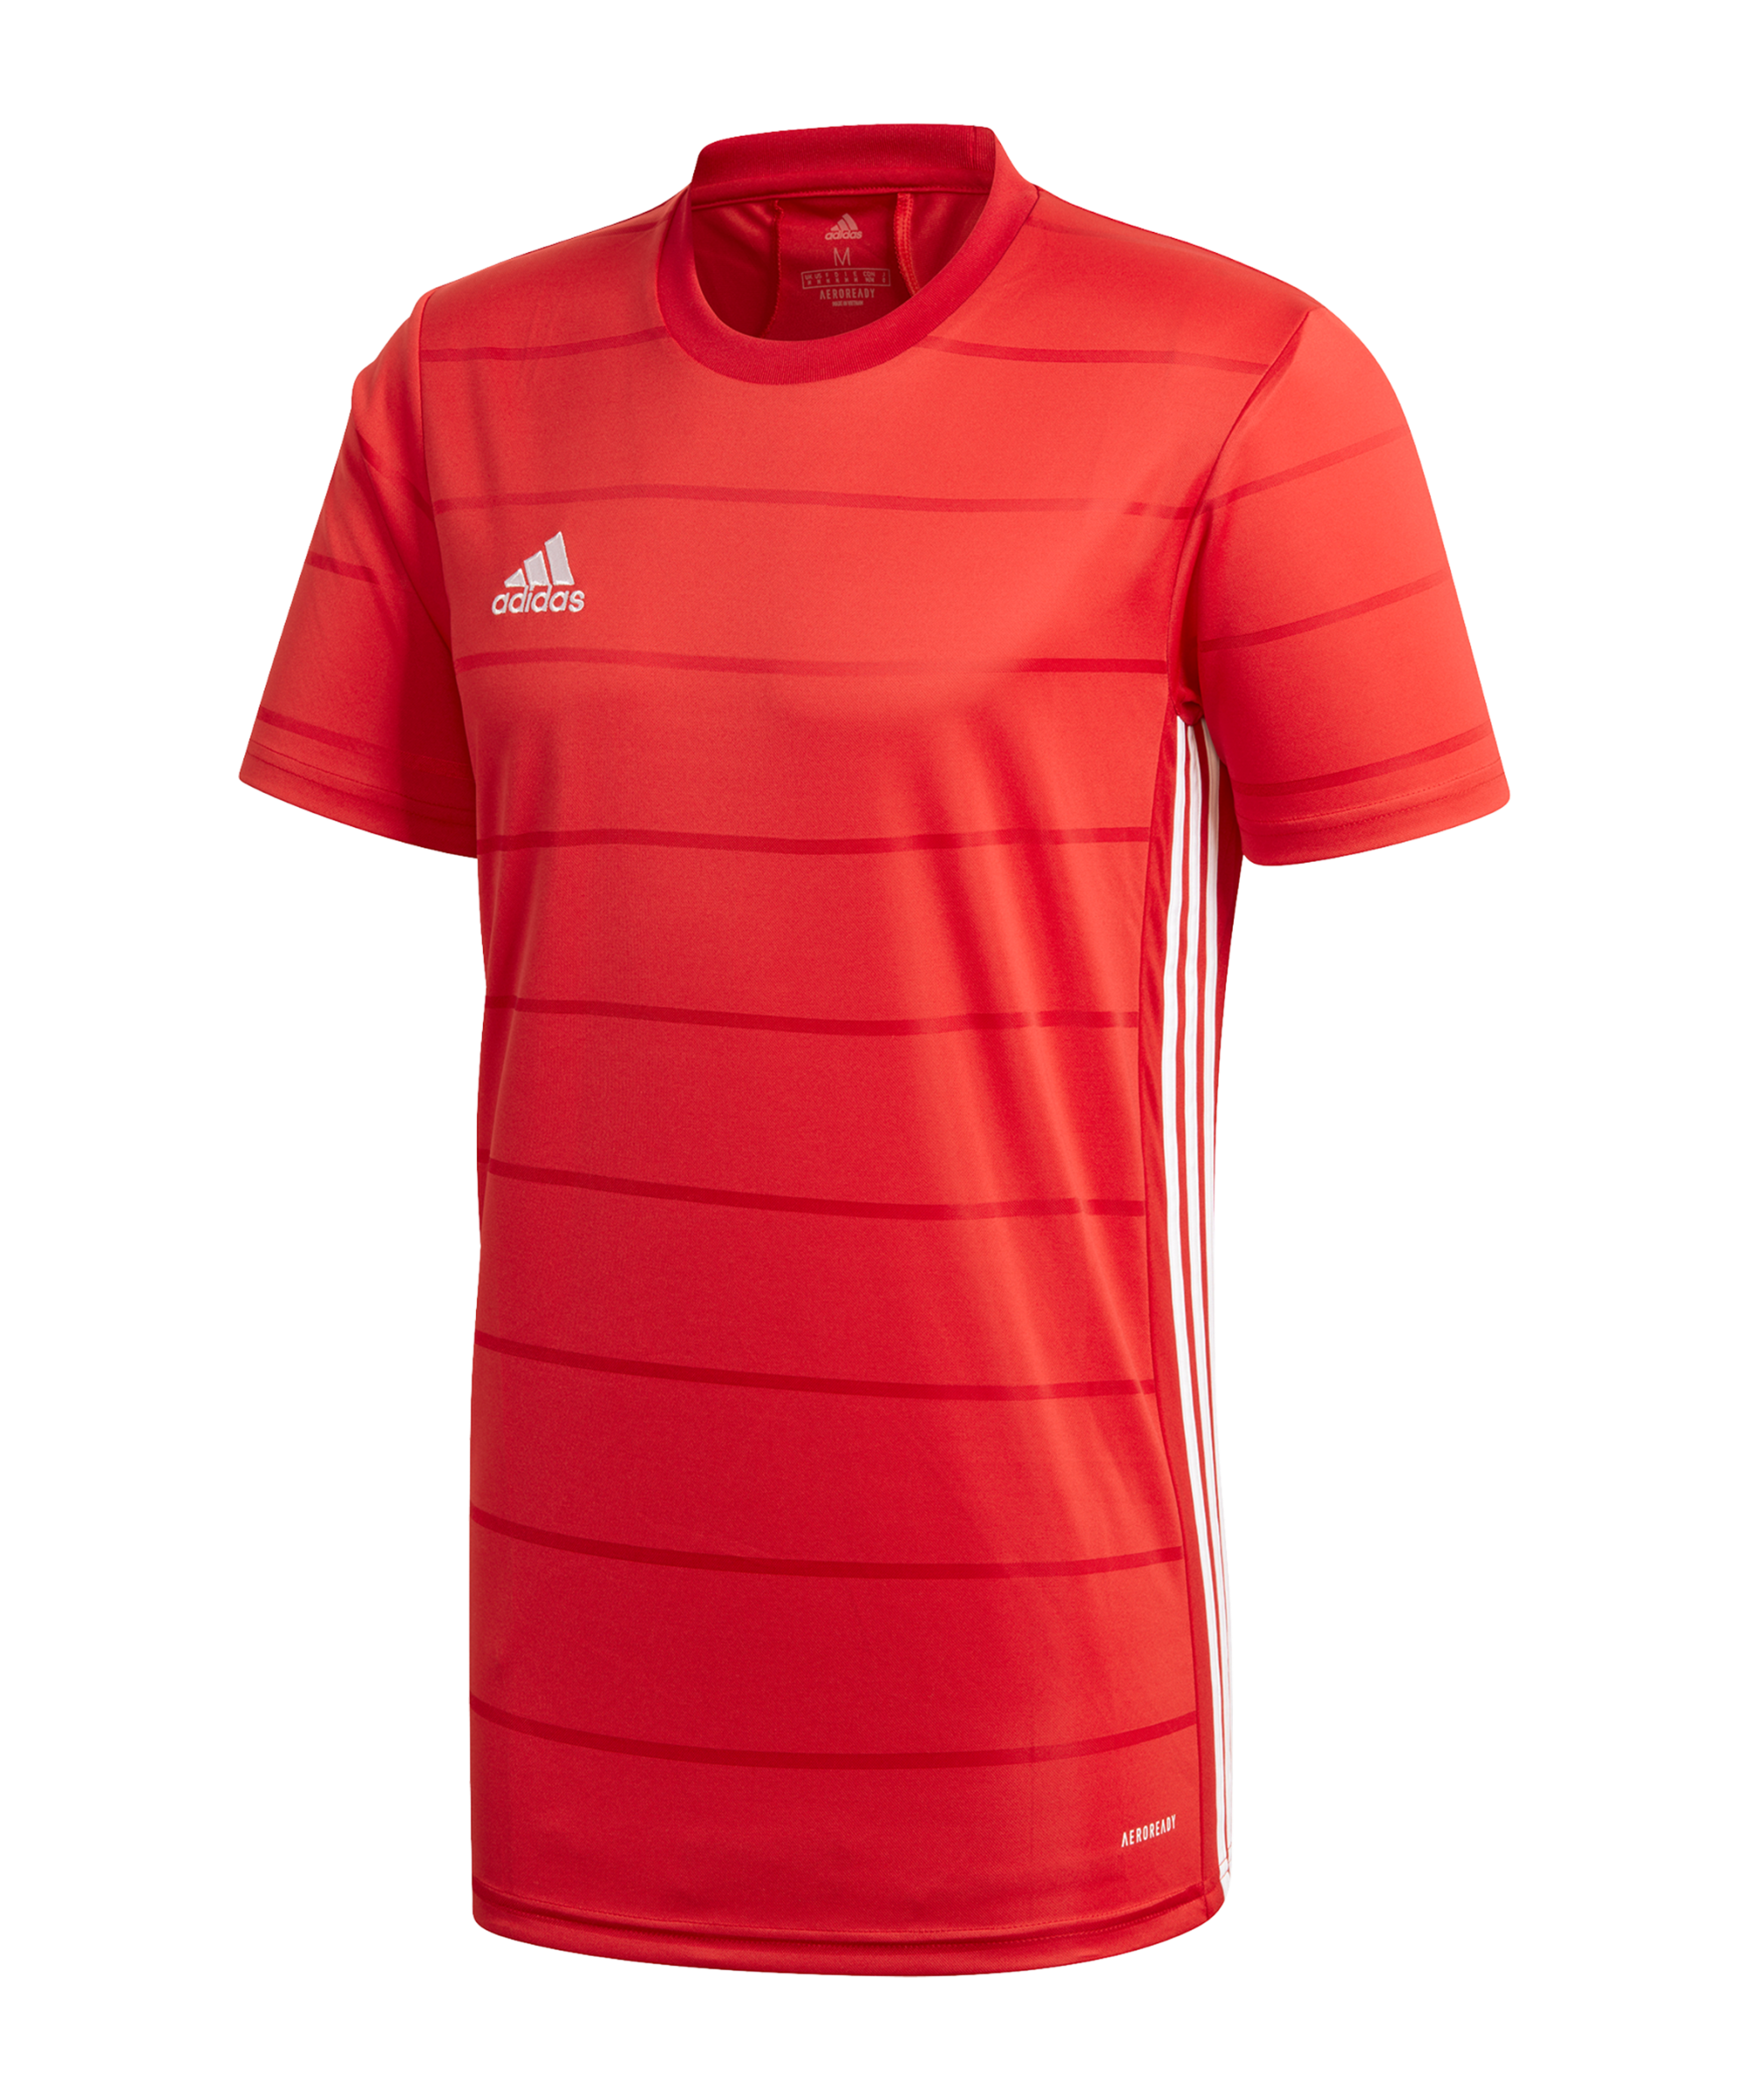 Pánský fotbalový dres s krátkým rukávem adidas Campeon 21